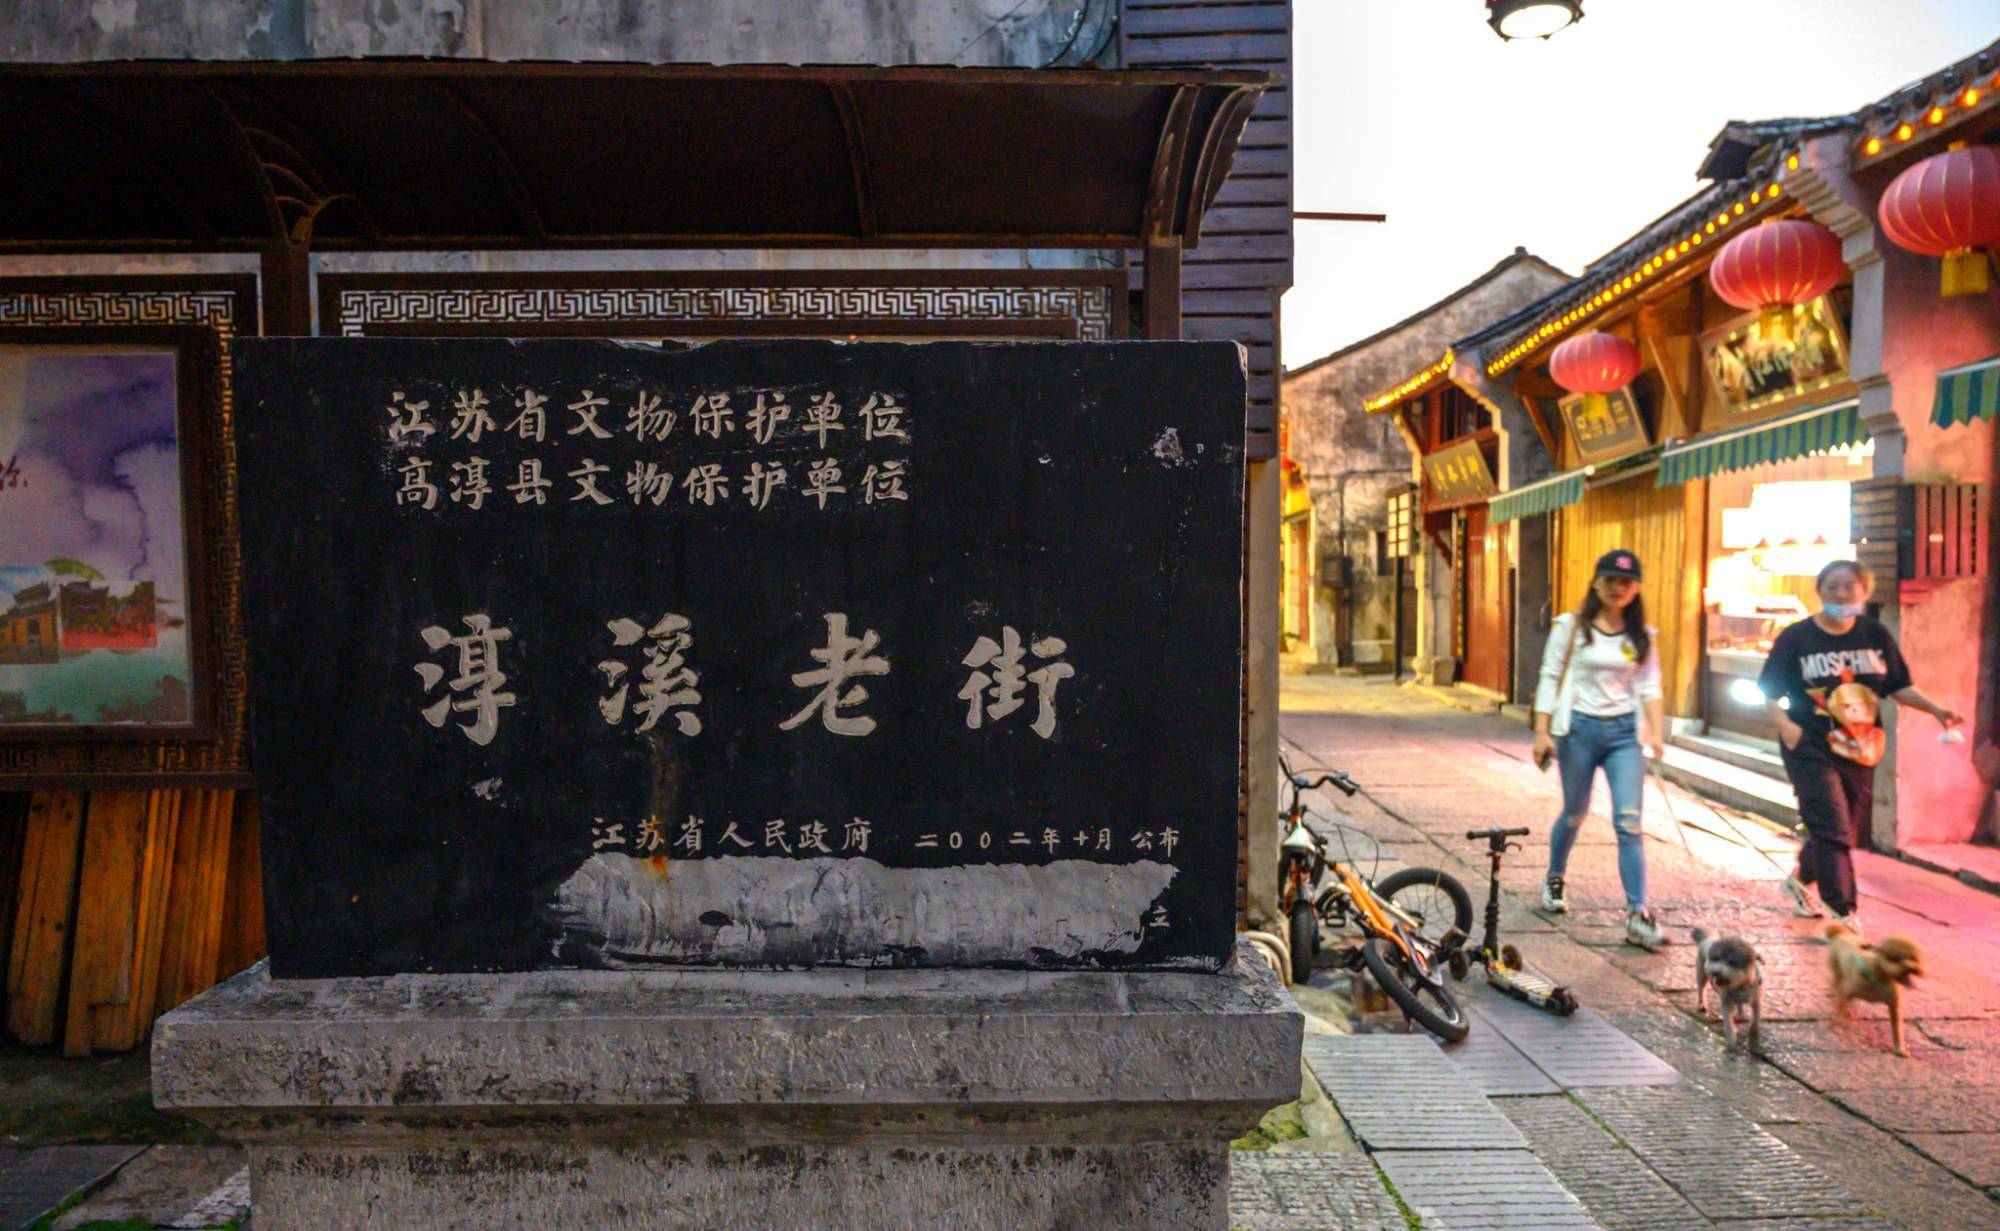 江苏有一条老街，可媲美南京夫子庙，被誉为“金陵第一古街”